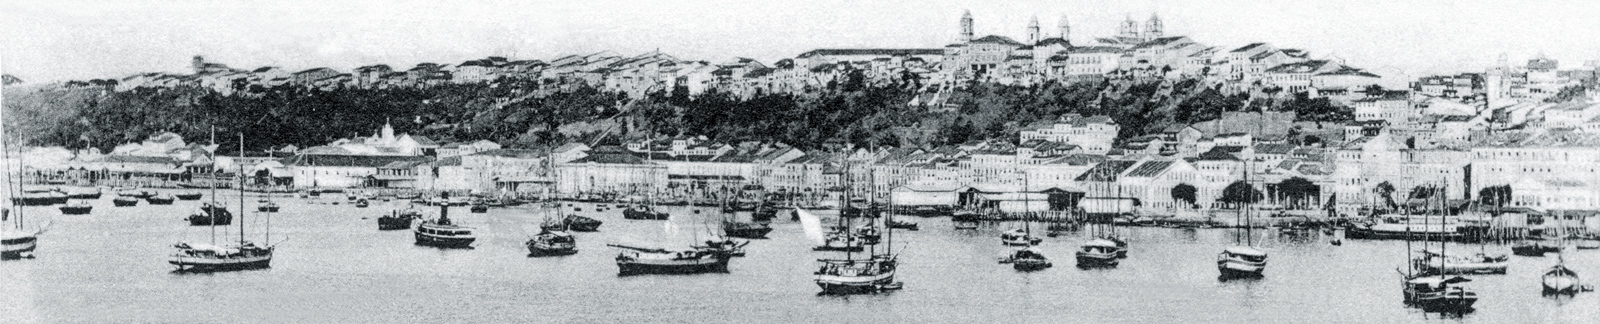 Antigo Porto Salvador